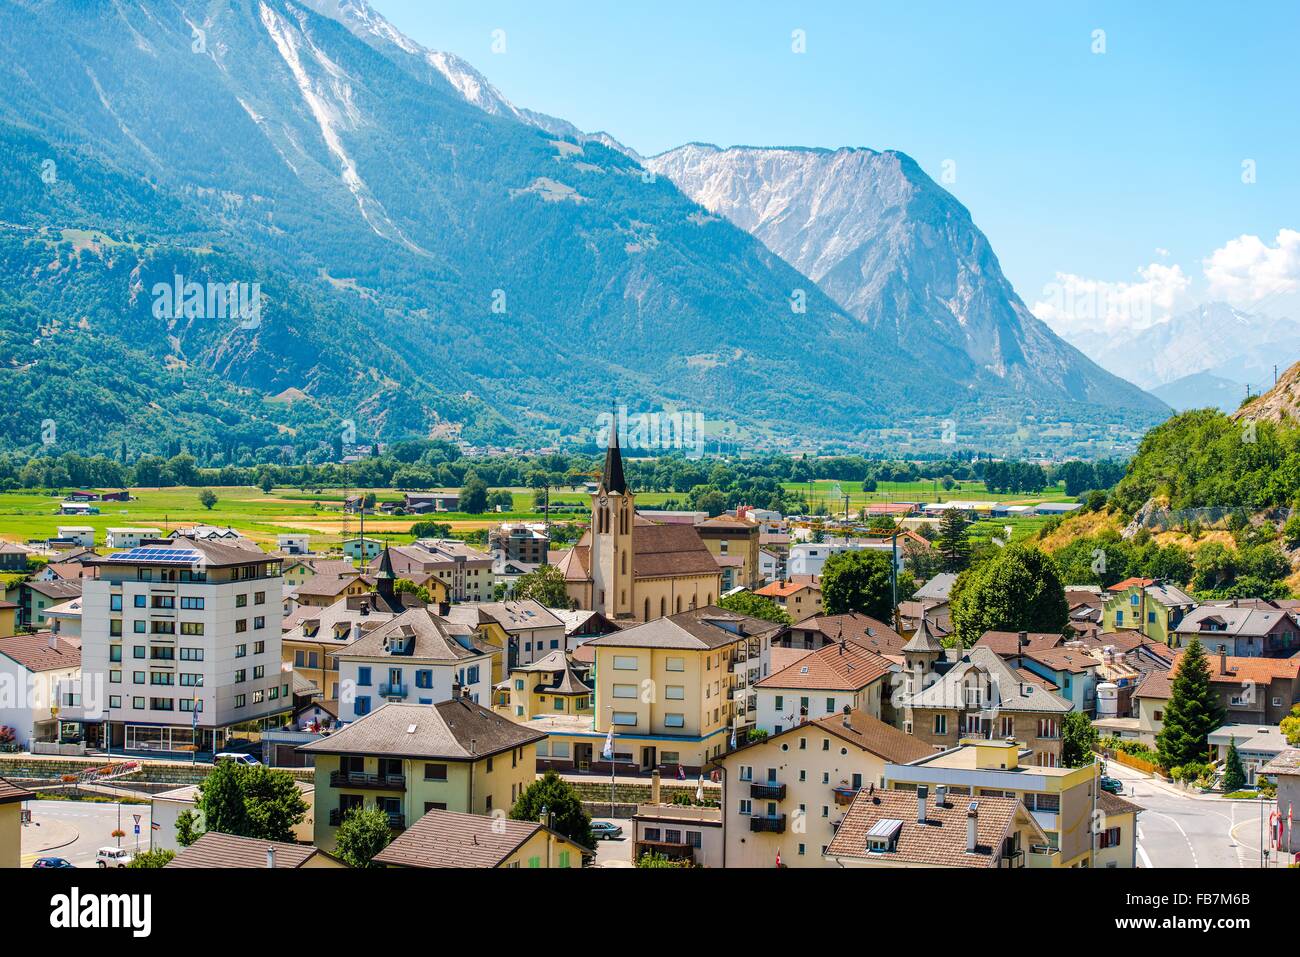 Gampel-Bratsch Schweiz Sommer Stadtpanorama. Gemeinde im Bezirk Leuk im Kanton Wallis in der Schweiz, Eu Stockfoto